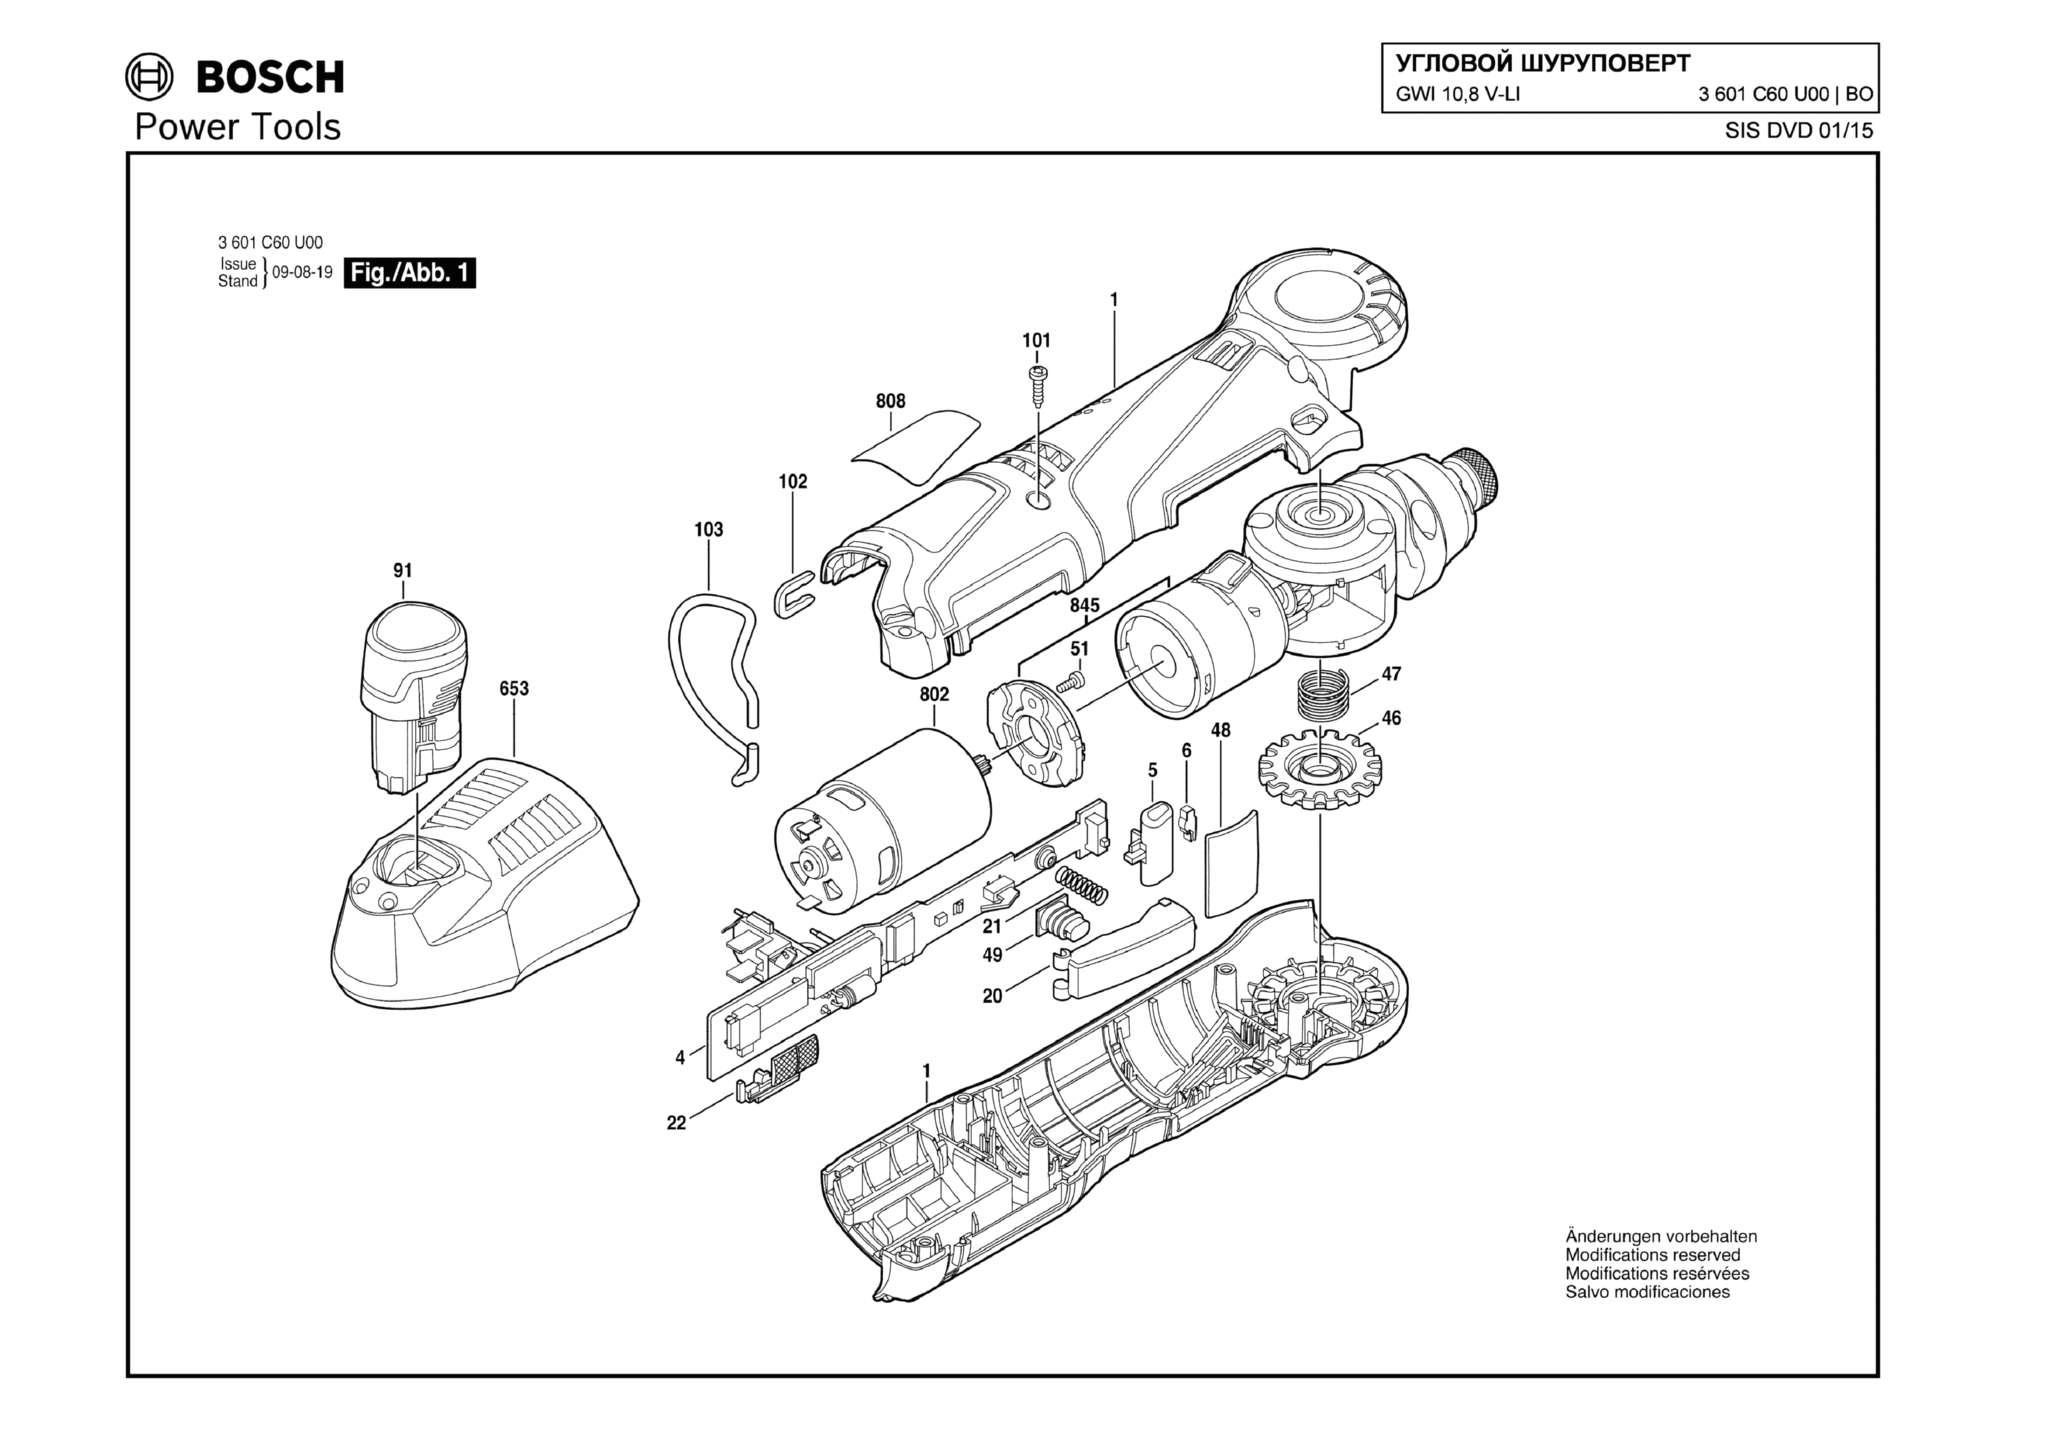 Запчасти, схема и деталировка Bosch GWI 10,8 V-LI (ТИП 3601C60U00)